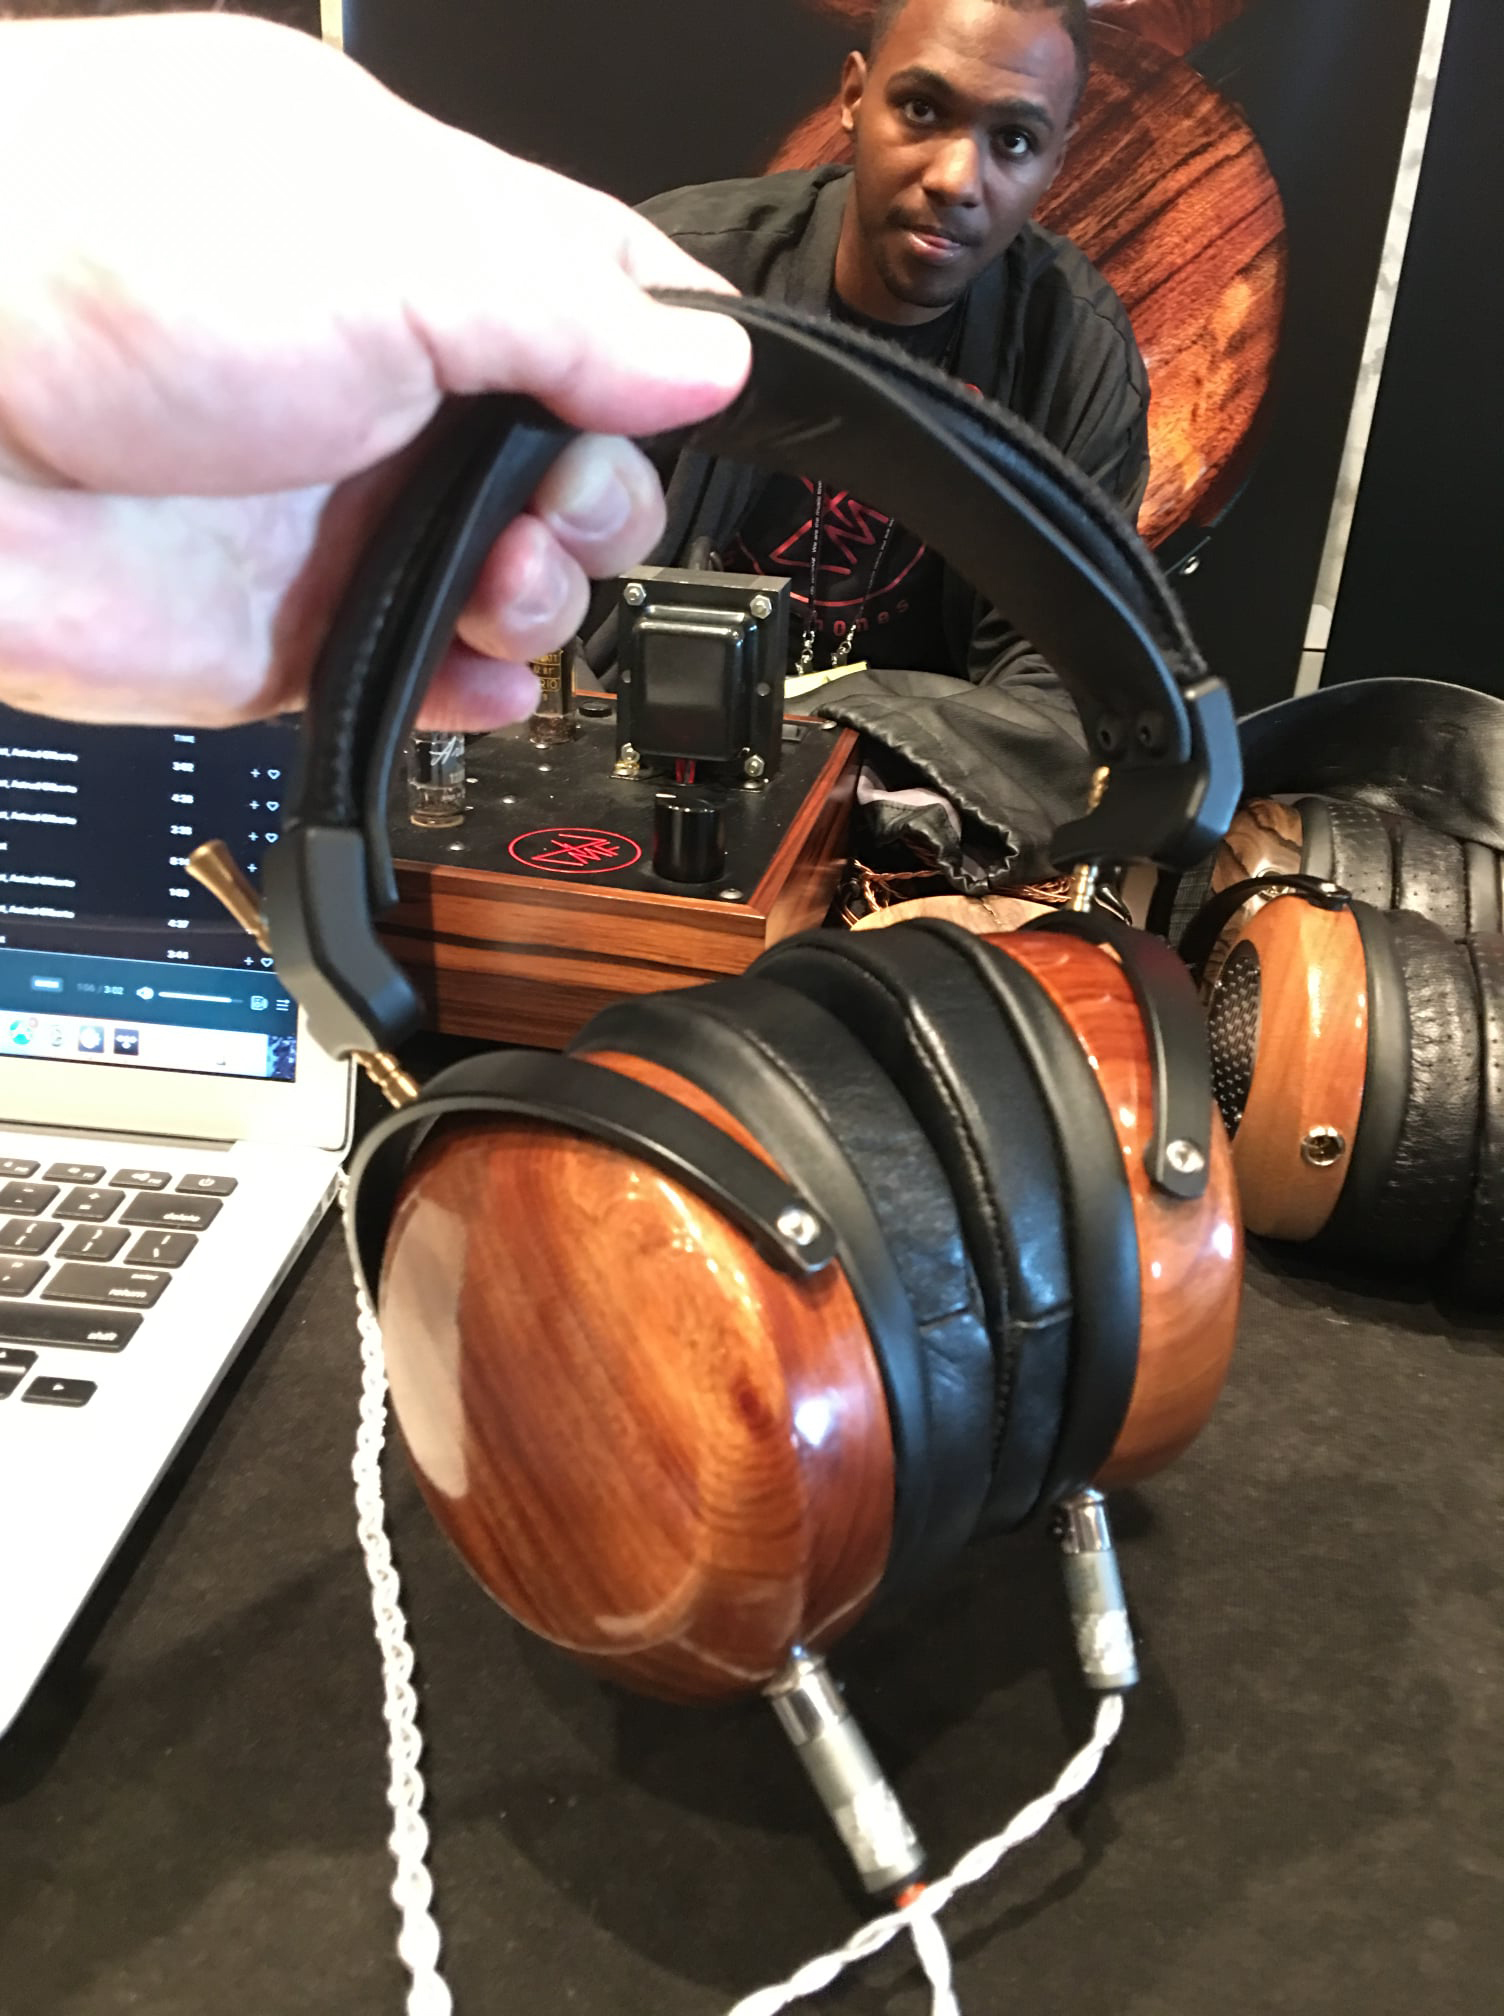 ZMF Headphones Headset In Hand